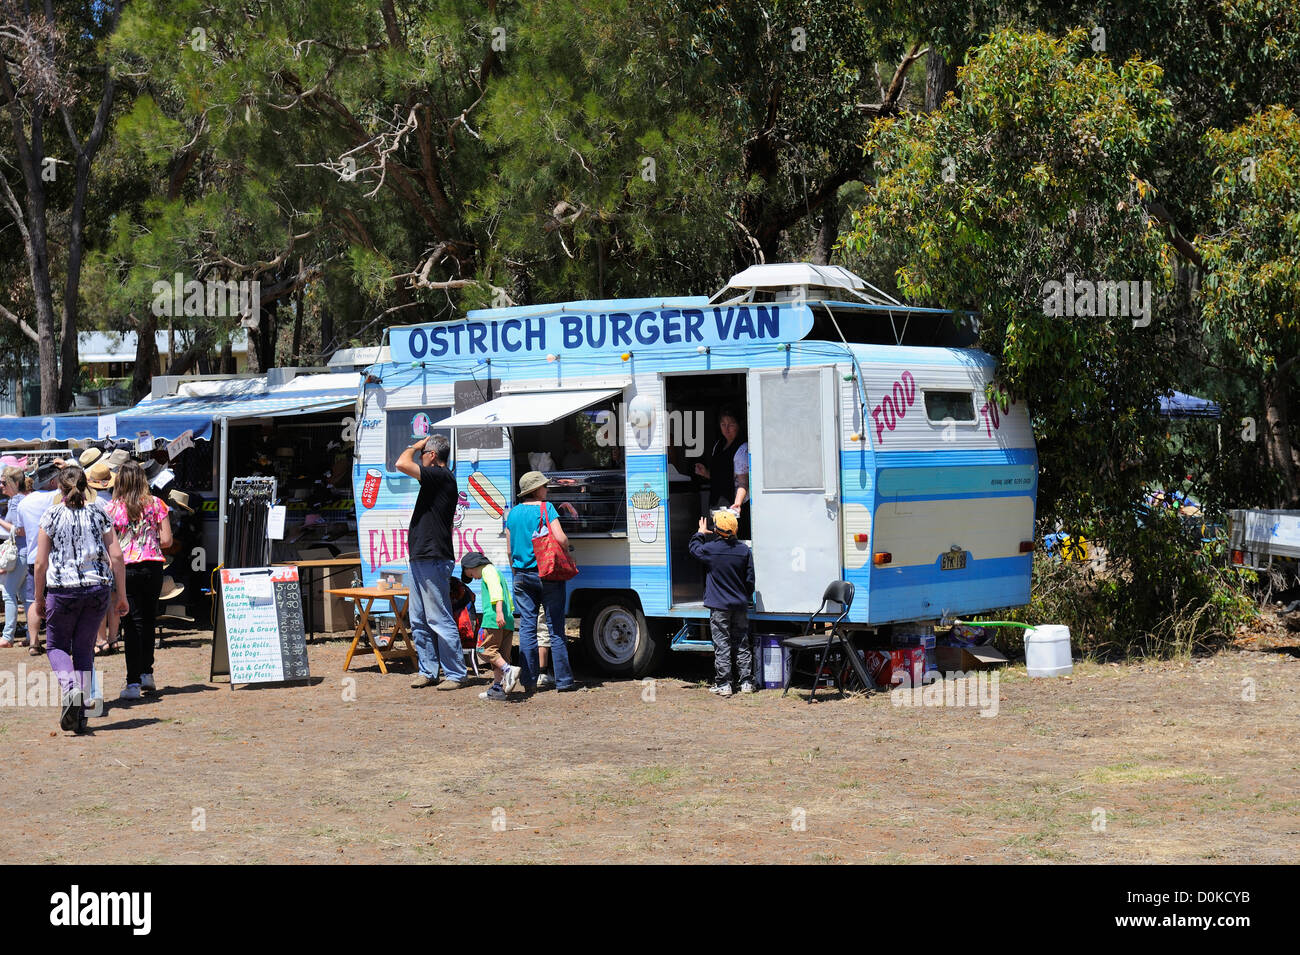 Vente de caravane une variété d'aliments, y compris l'autruche, l'émeu et Kangaroo burgers, au salon de l'agriculture, de l'Australie Banque D'Images